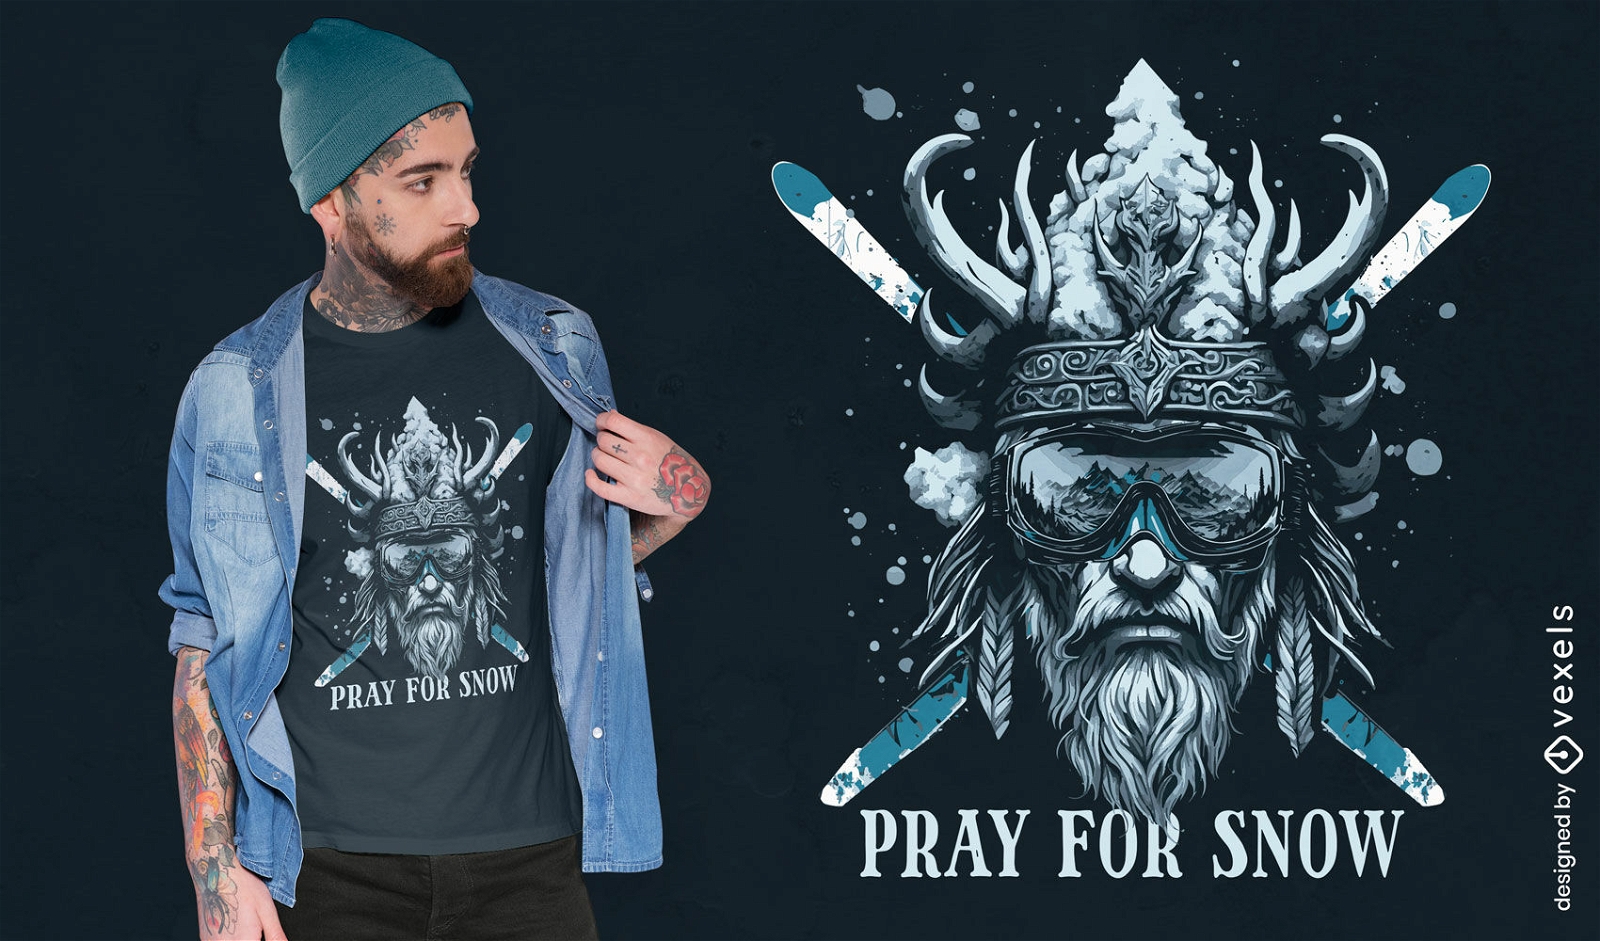 Diseño de camiseta de esquí nórdico.